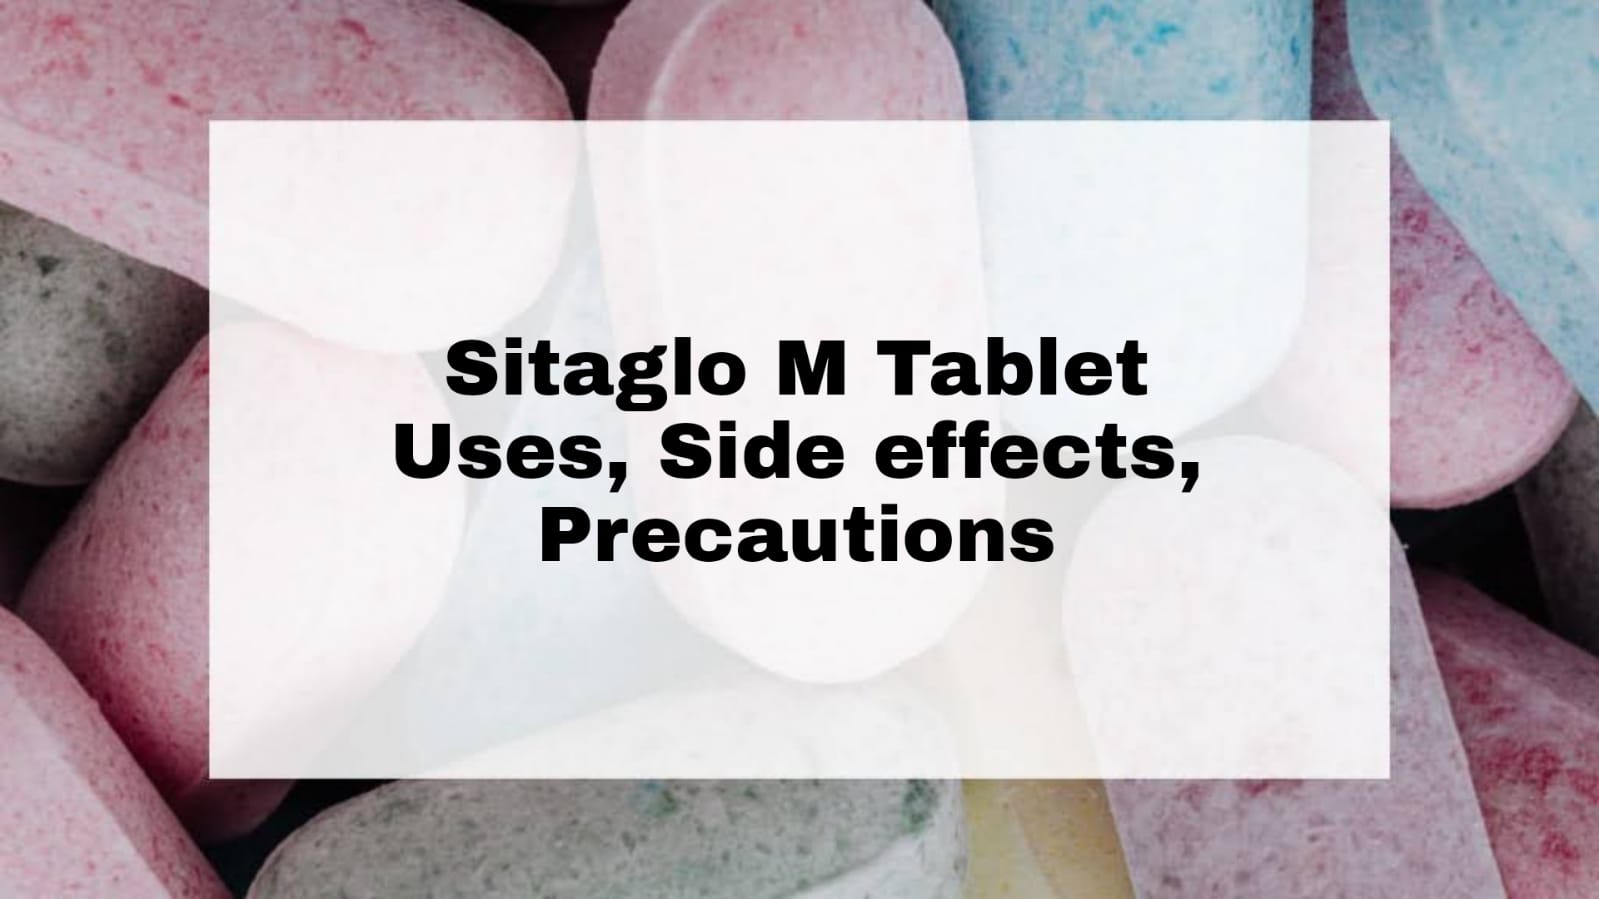 SItaglo M Tablet